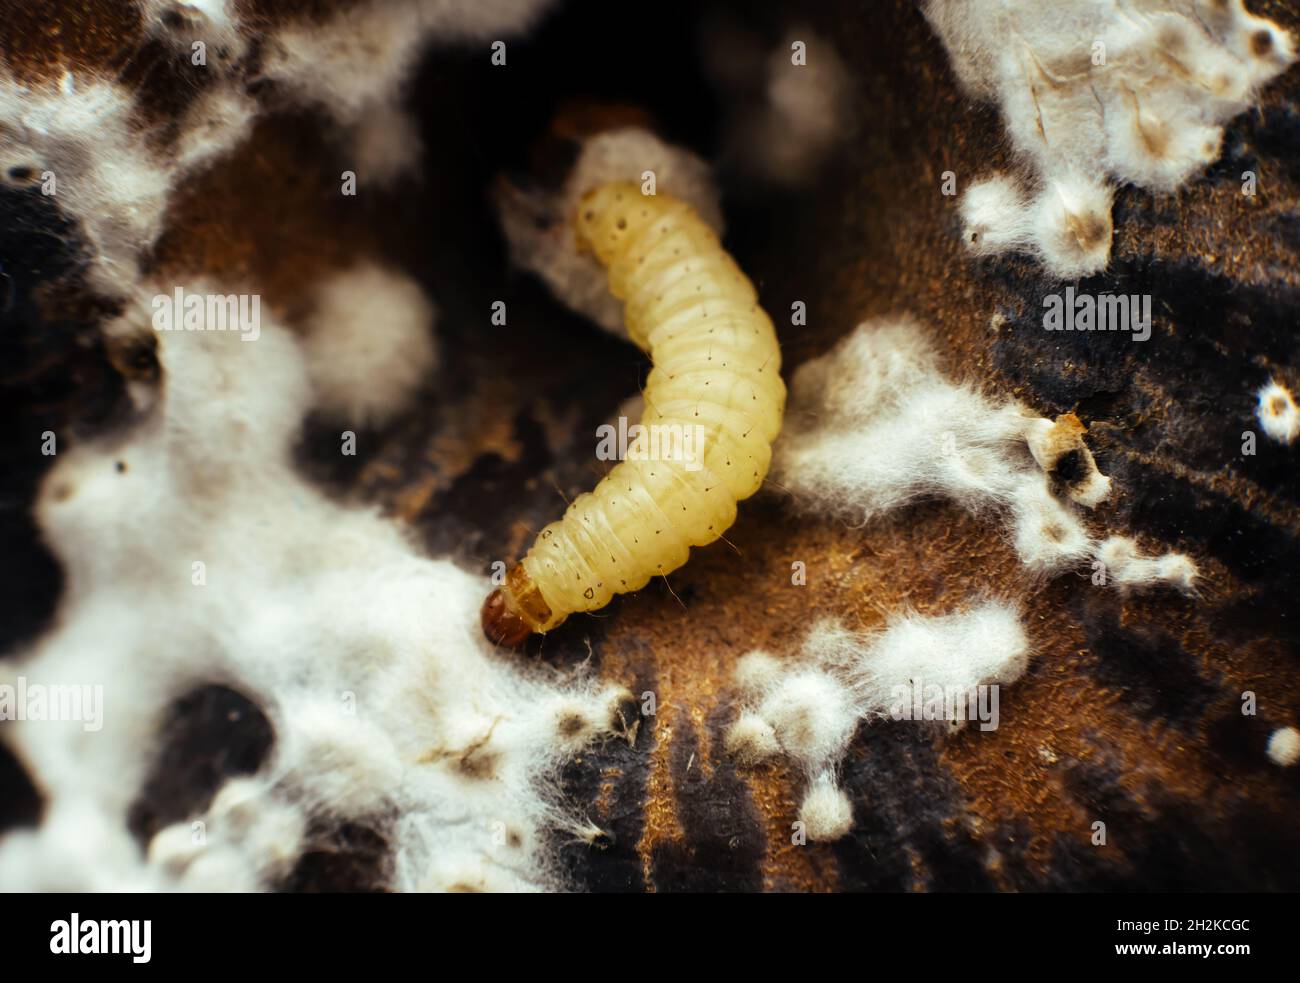 Ein Wurm, ein Insekt auf der Oberfläche eines schimmeligen Apfels. Die schimmeligen Früchte, die der Wurm isst Stockfoto